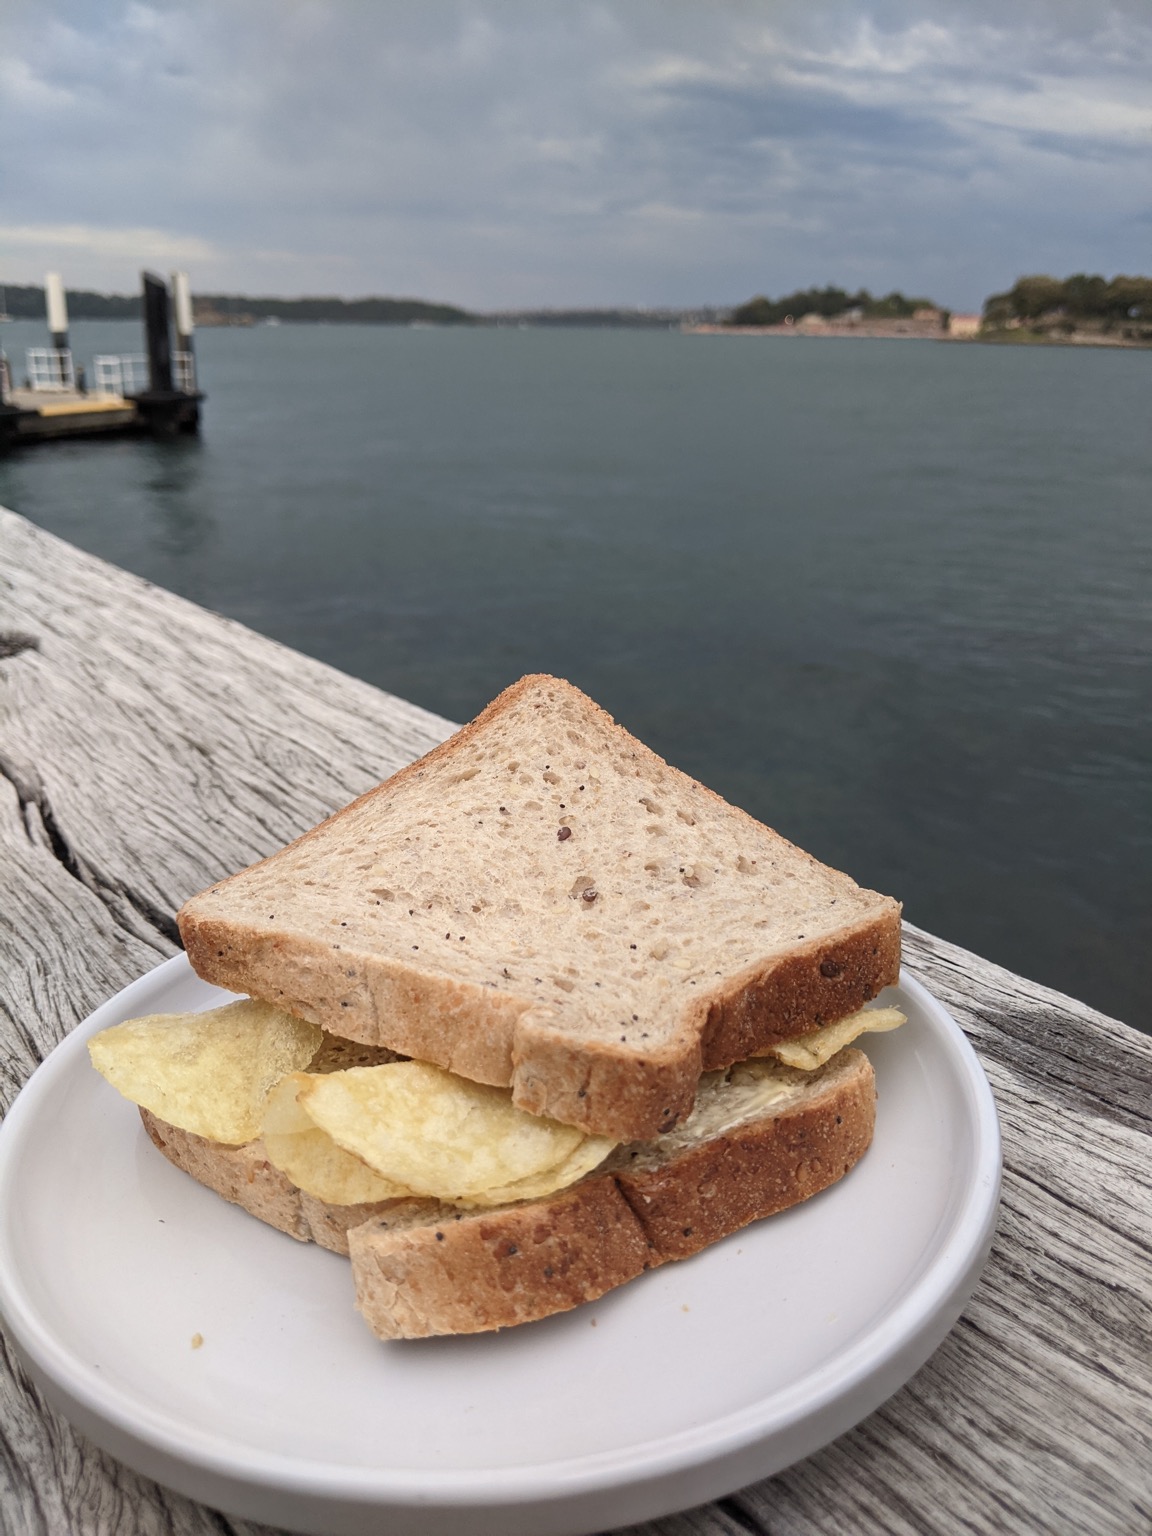 Crisp sandwich on a plate on a jetty